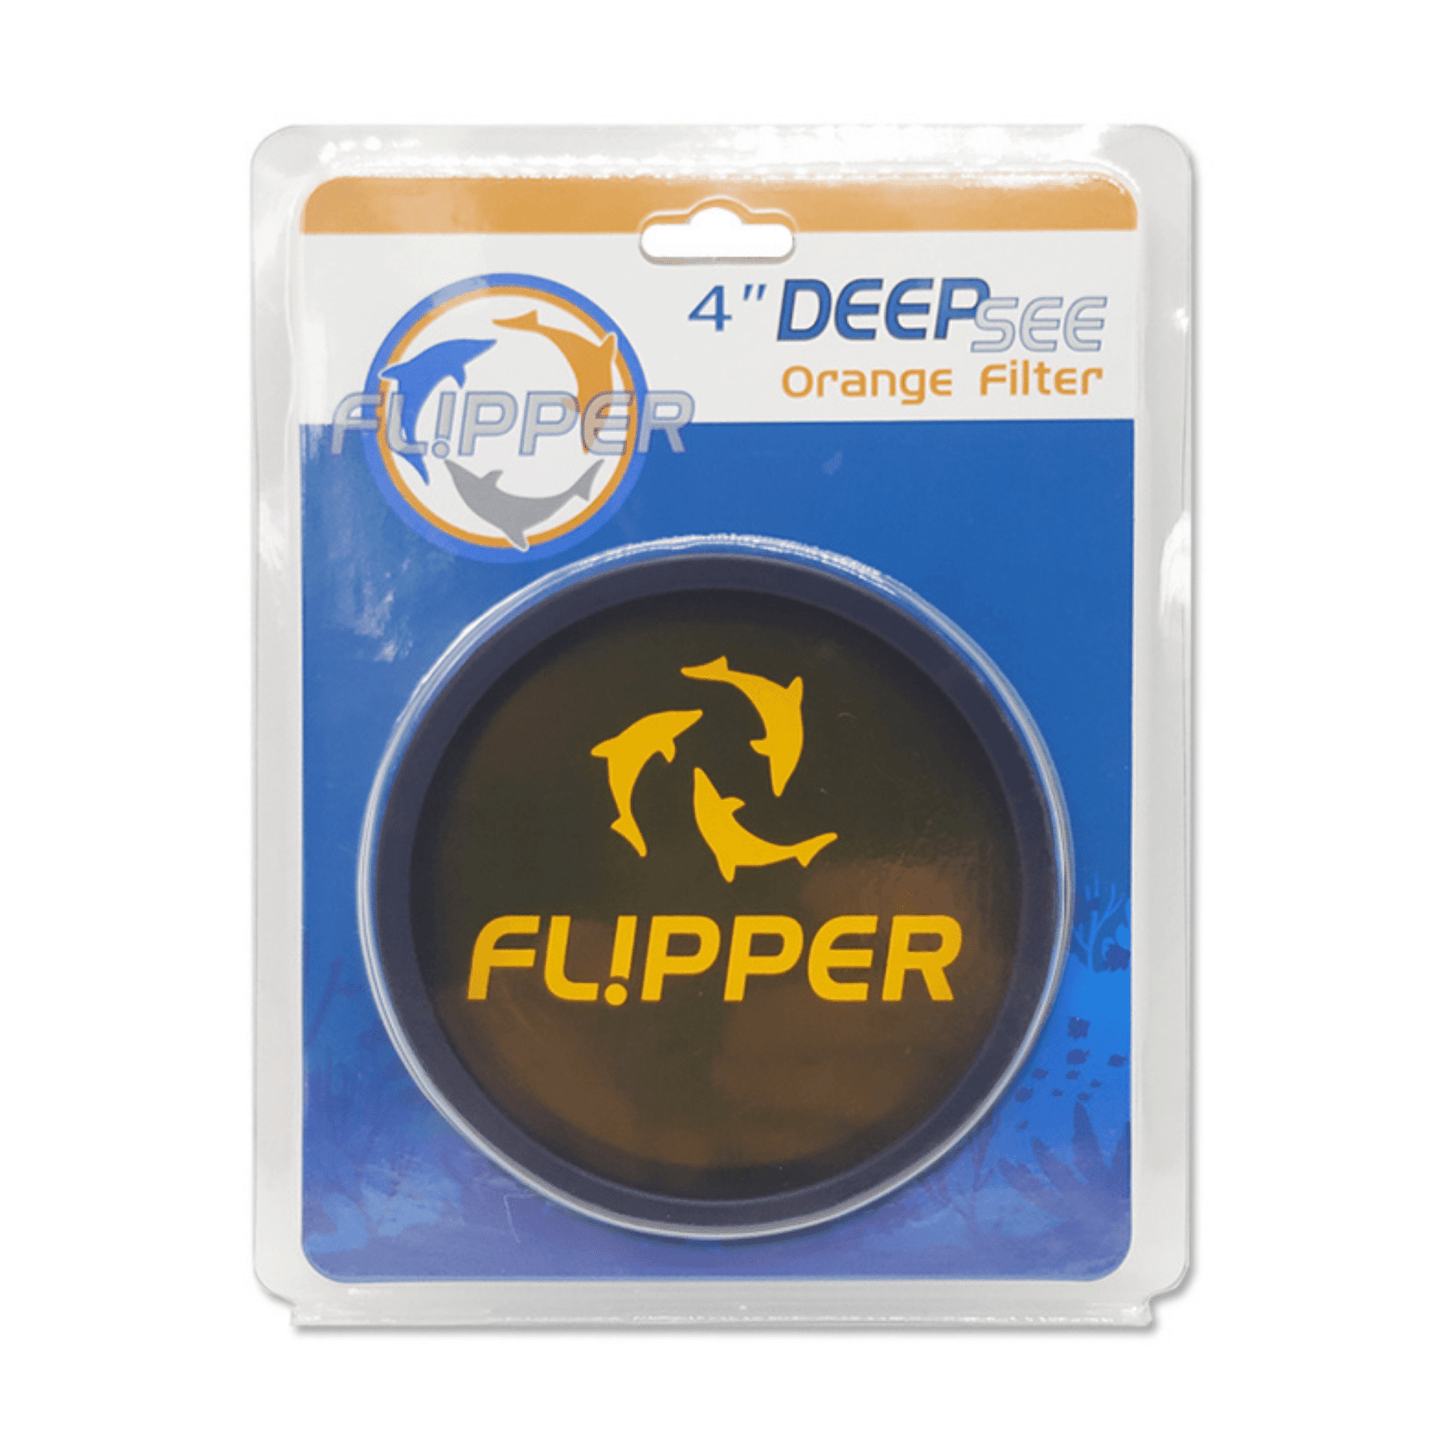 DeepSee Viewer - Orange Lens